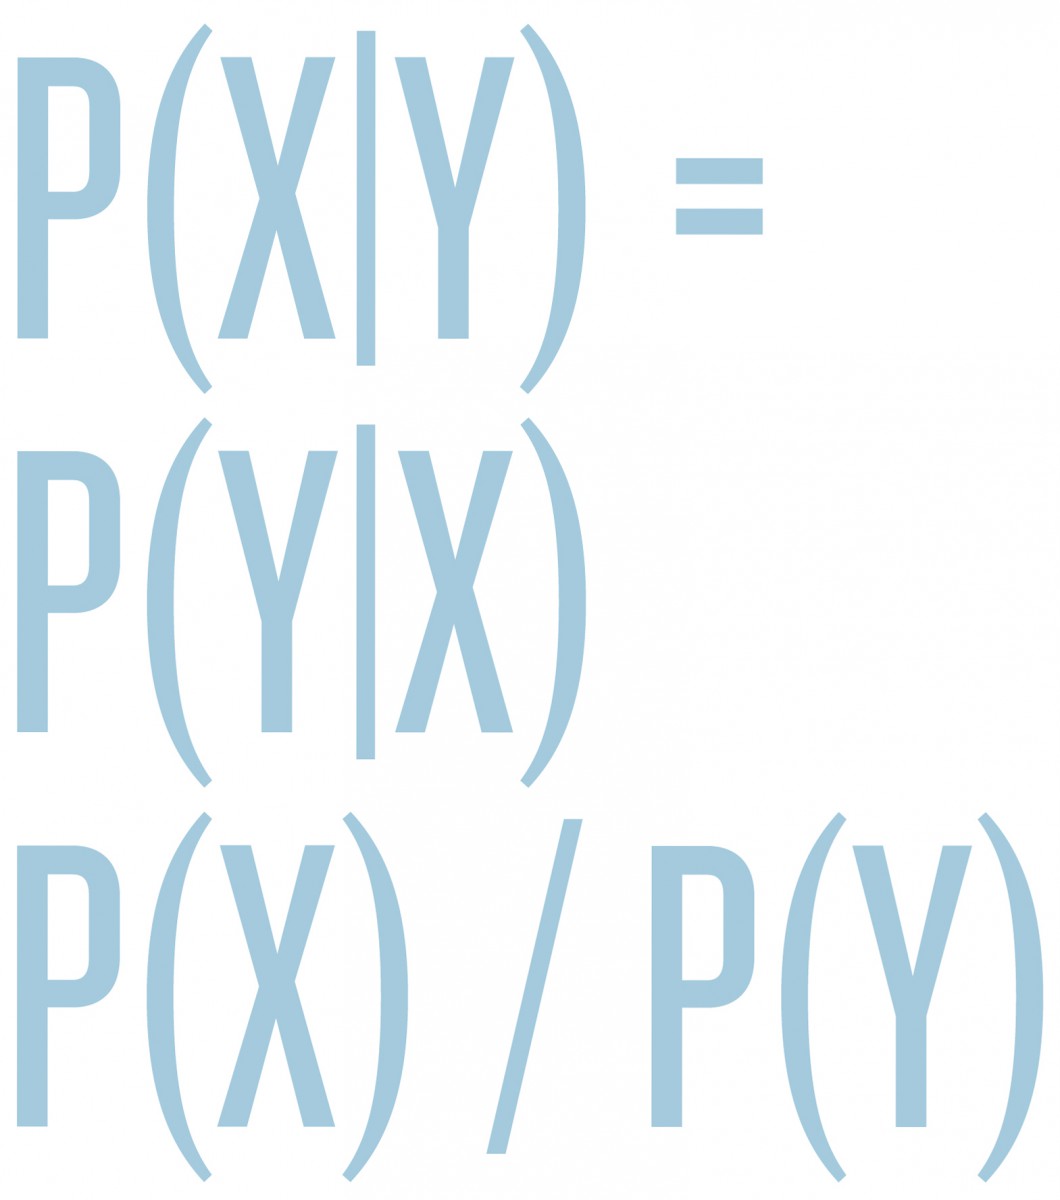 p(X|Y) = p(Y|X) p(X) / p(Y)